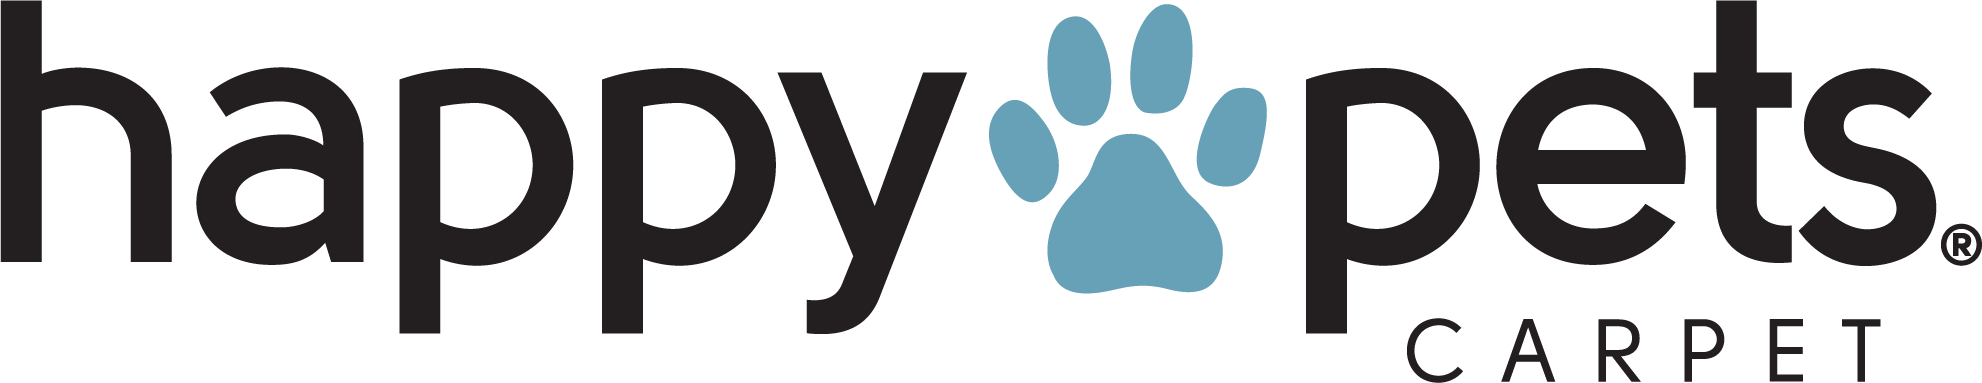 Pet Performance Happy Pets Logo | CarpetsPlus COLORTILE